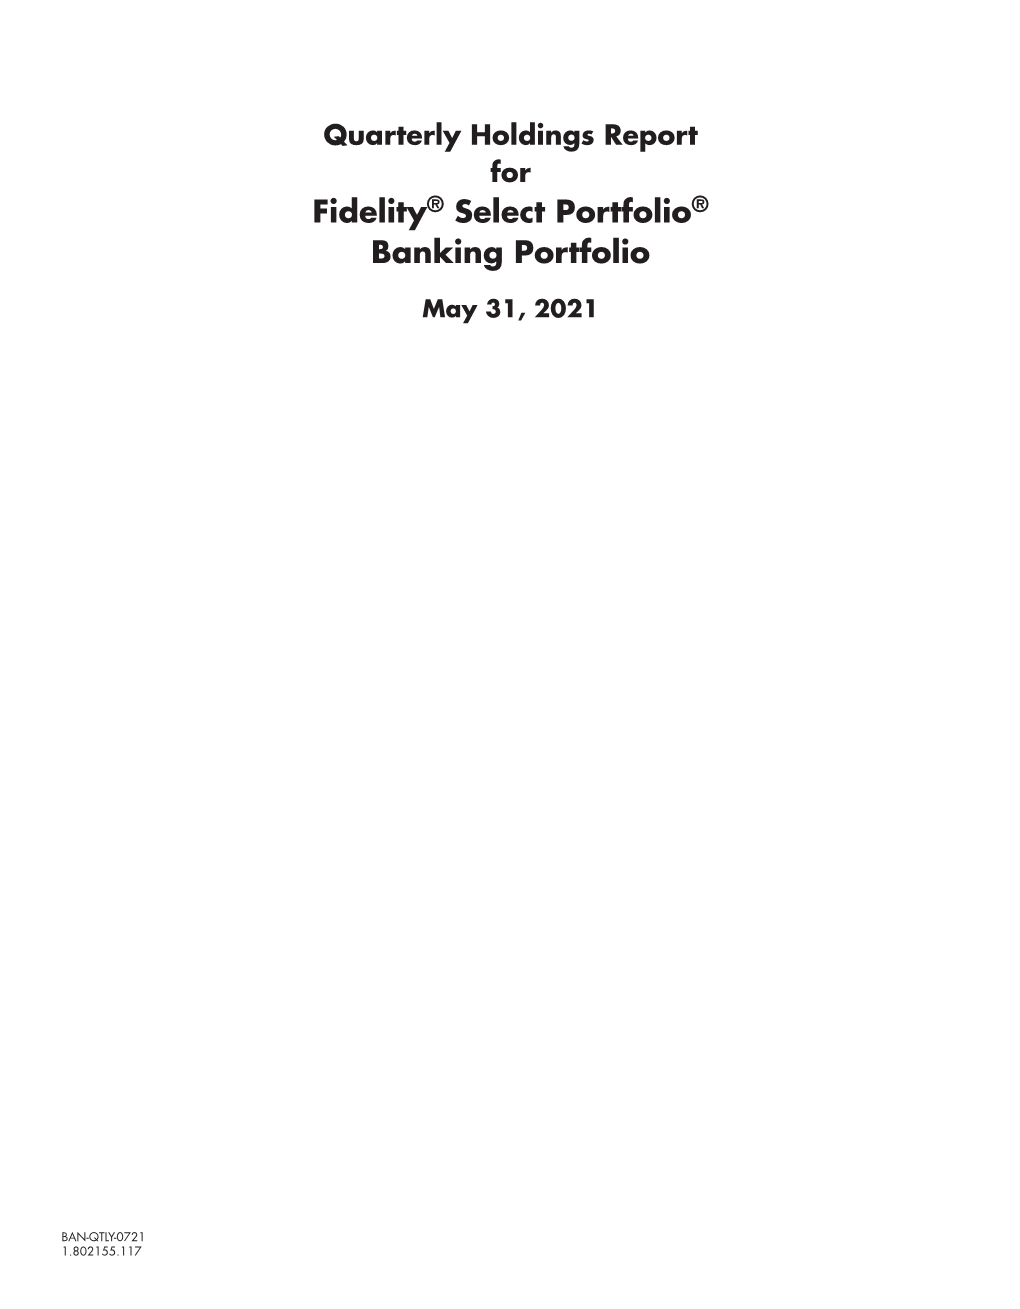 Fidelity® Select Portfolio® Banking Portfolio